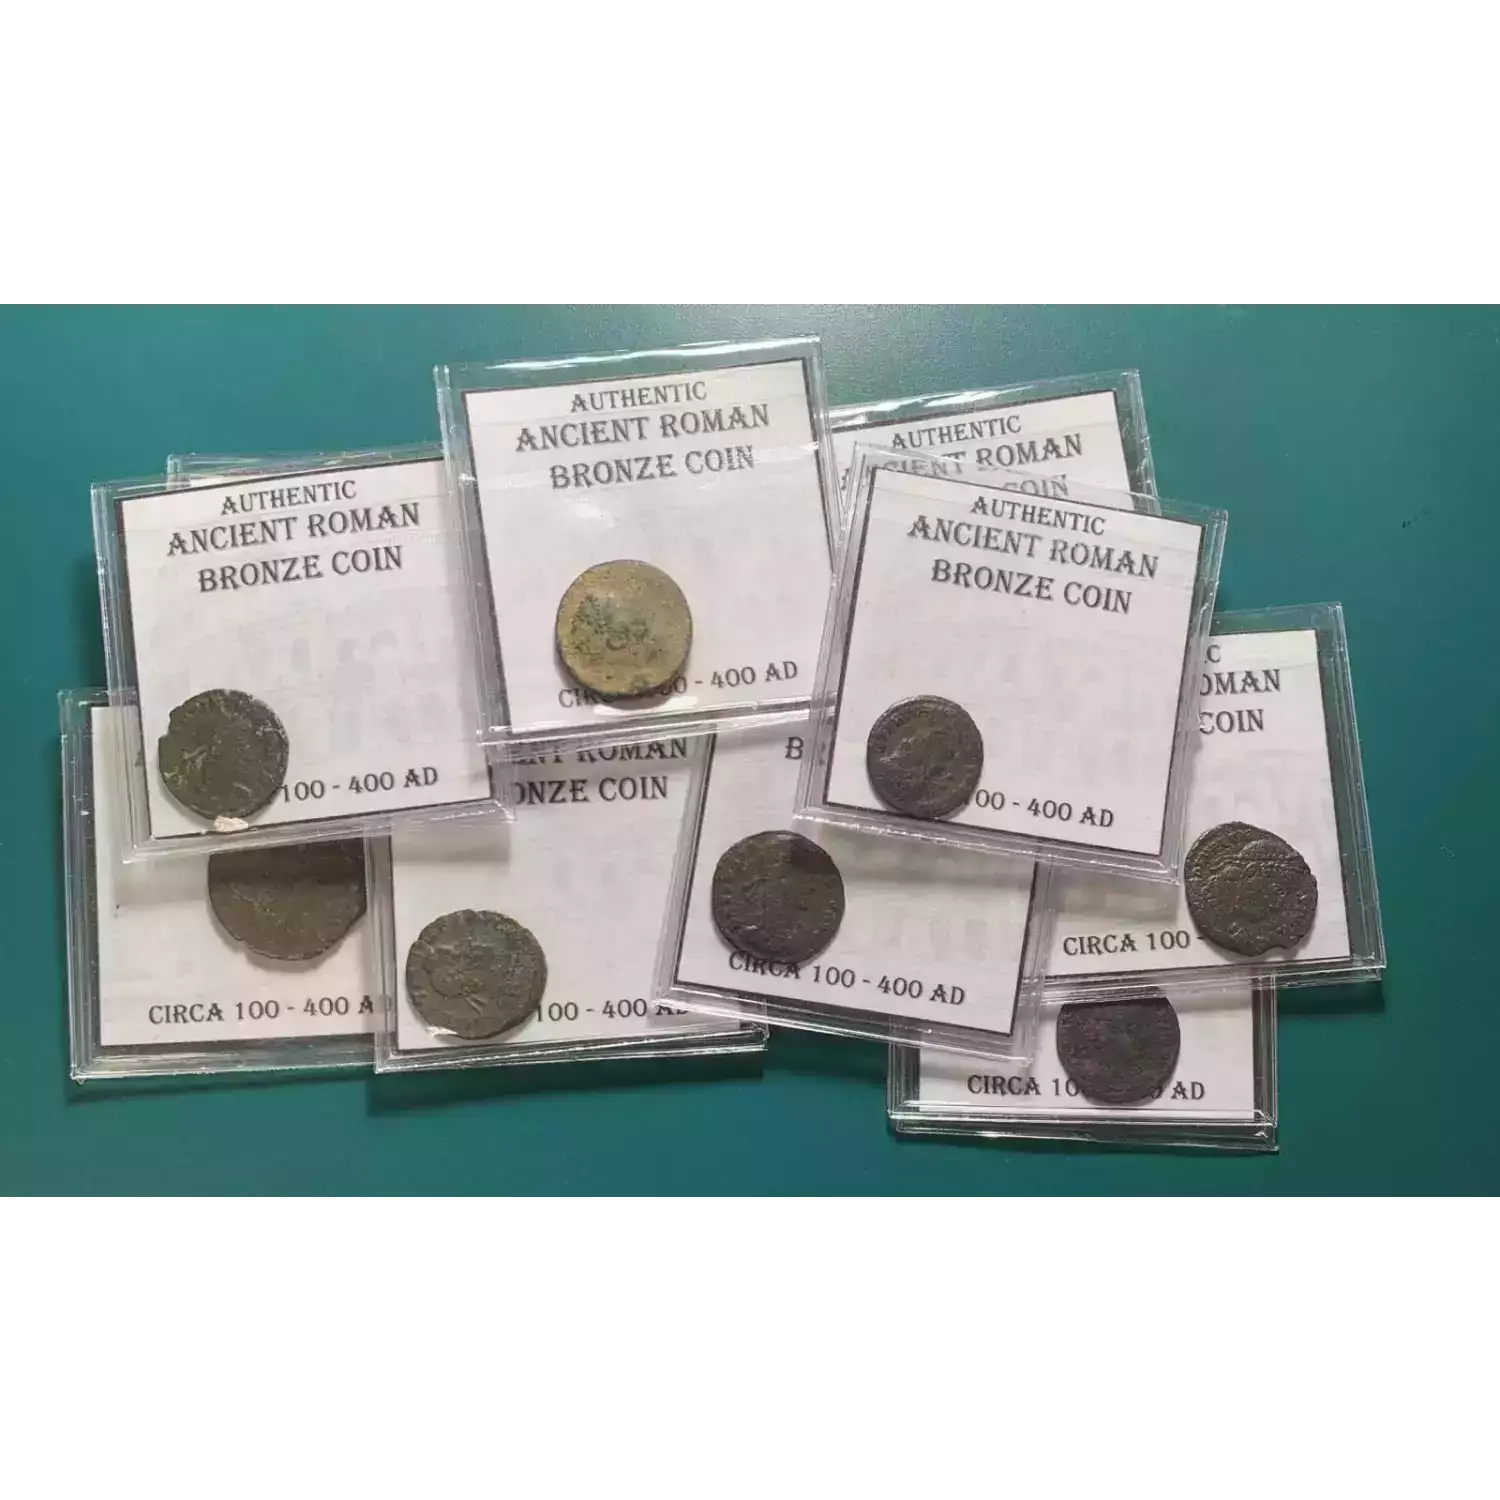 Ancient Roman Bronze Coin Circa 100-400 AD